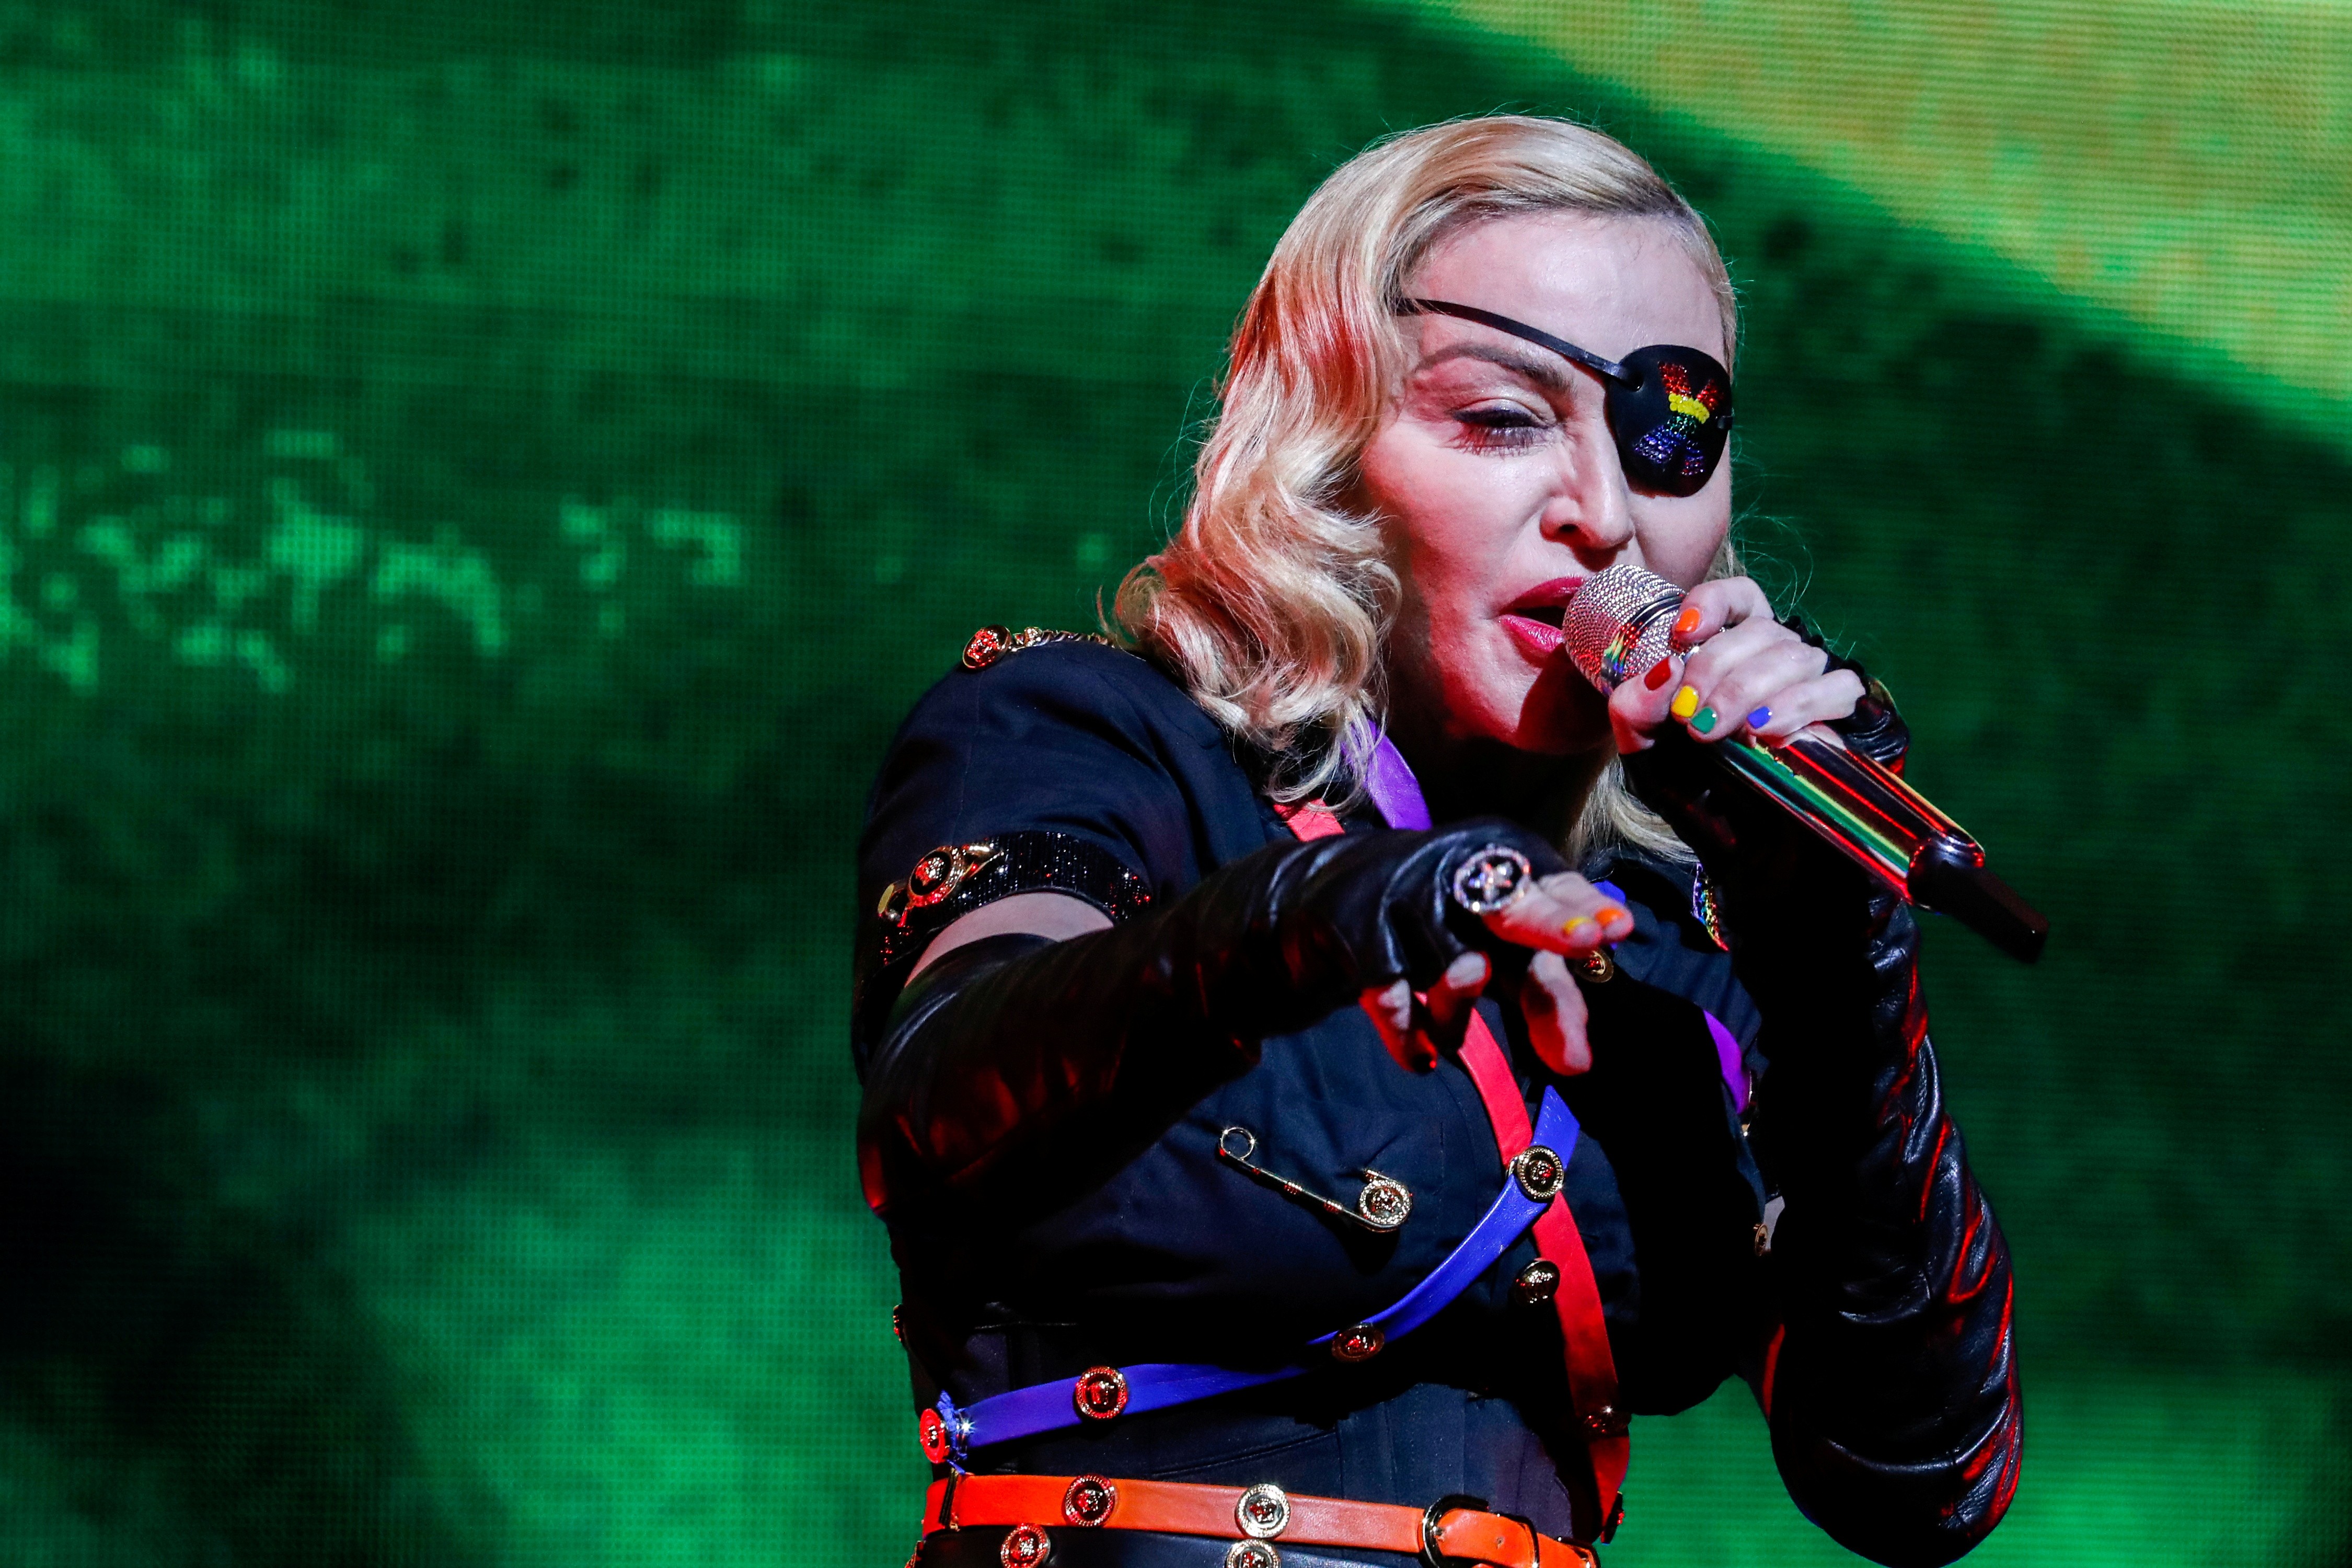 Não vai ver Madonna? Fim de semana em SP tem festas em homenagem à rainha do pop e shows nostálgicos